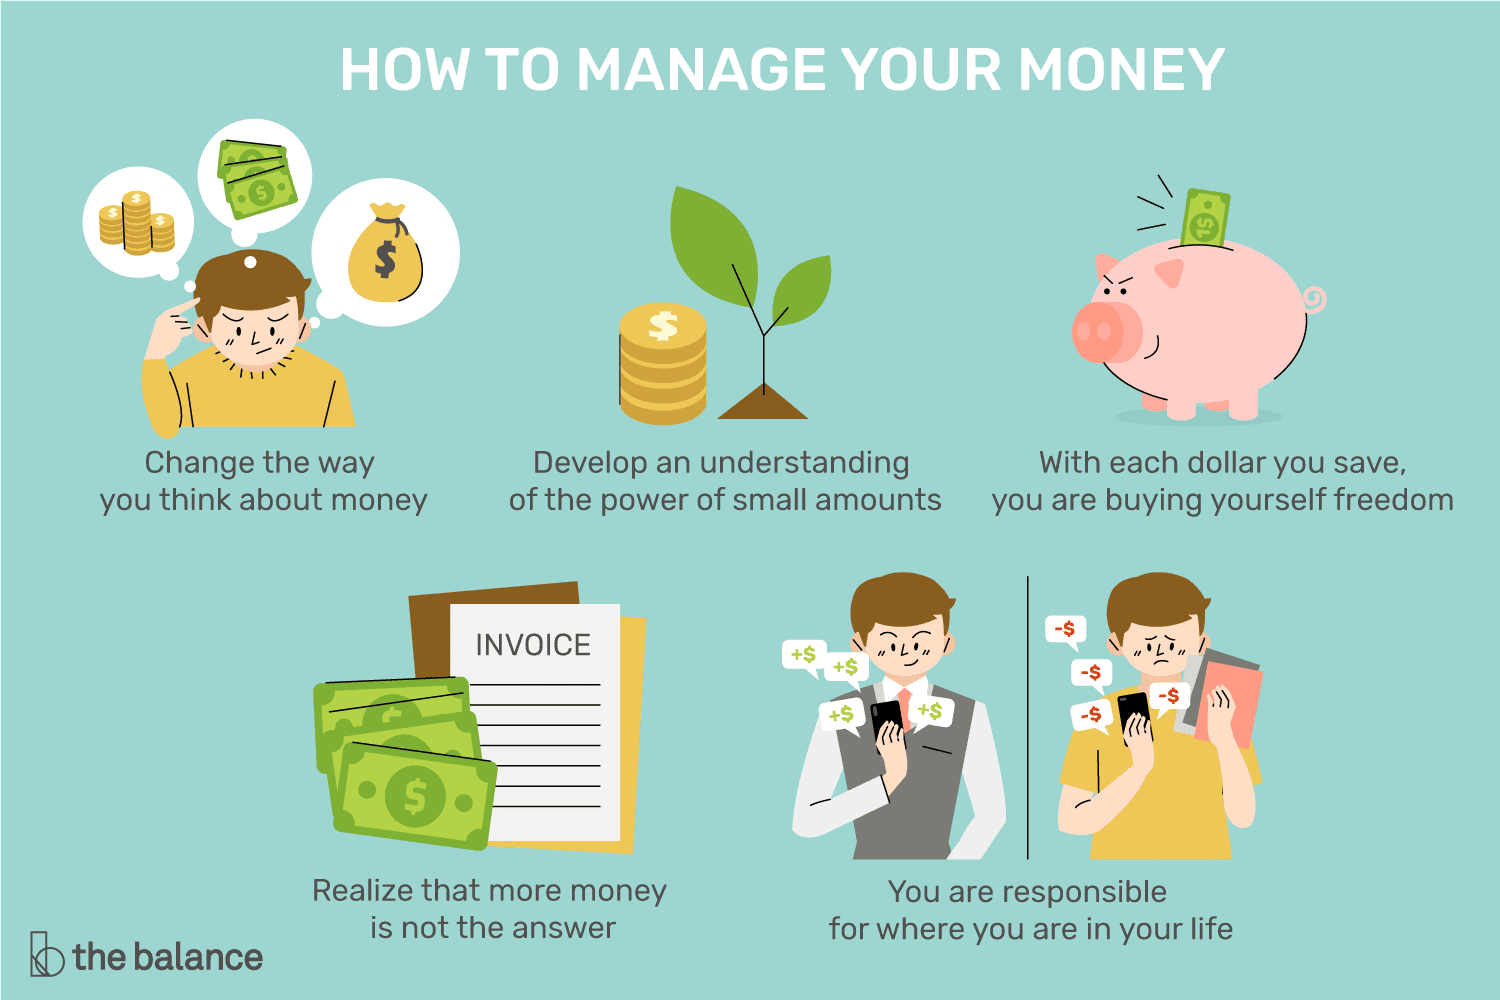 Quiero hacerme rico: instrucciones detalladas sobre cómo ganar dinero